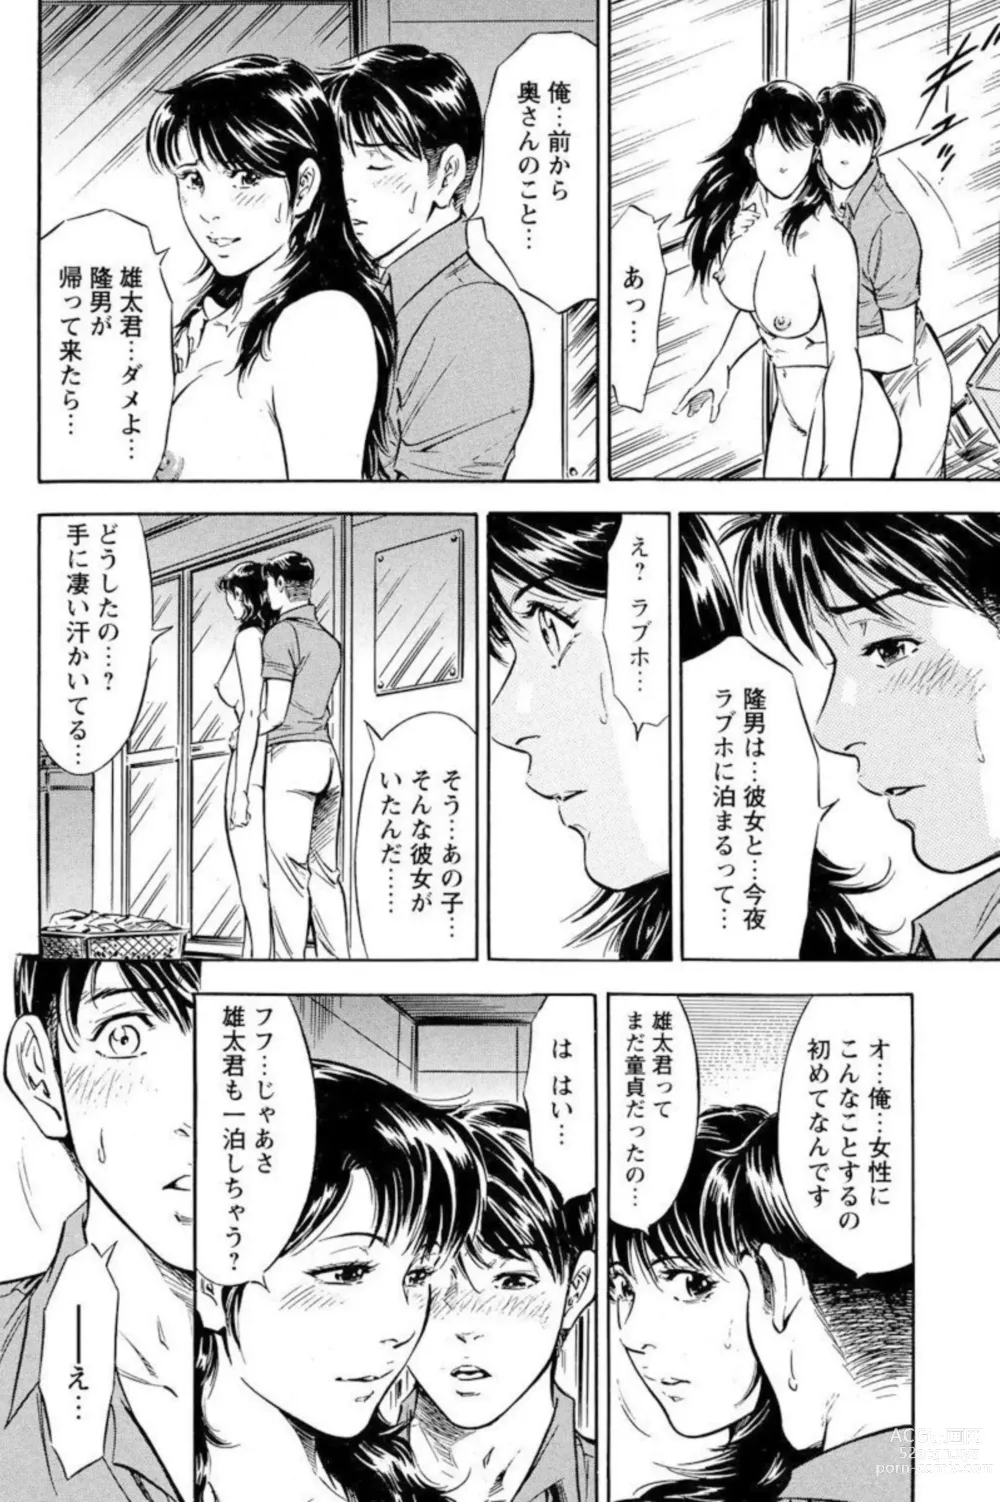 Page 10 of manga Yūjin no Haha ni Yukkuri Dashi re 【 Bunsatsuban 】1